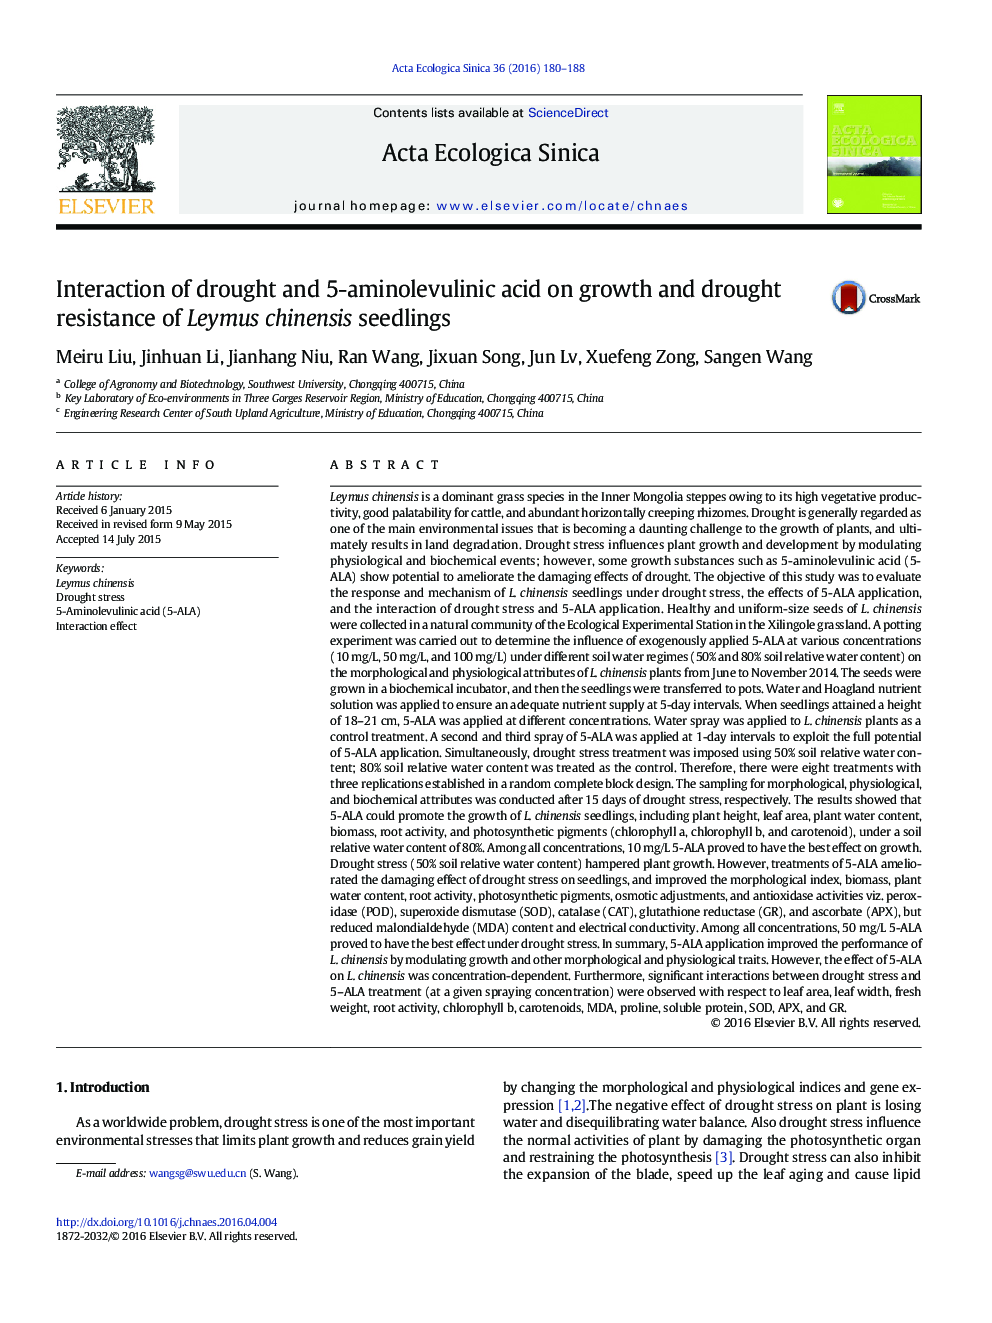 تعامل خشکی و 5-آمینولولولینیک اسید بر رشد و مقاومت خشکی گیاهچه های Leymus chinensis